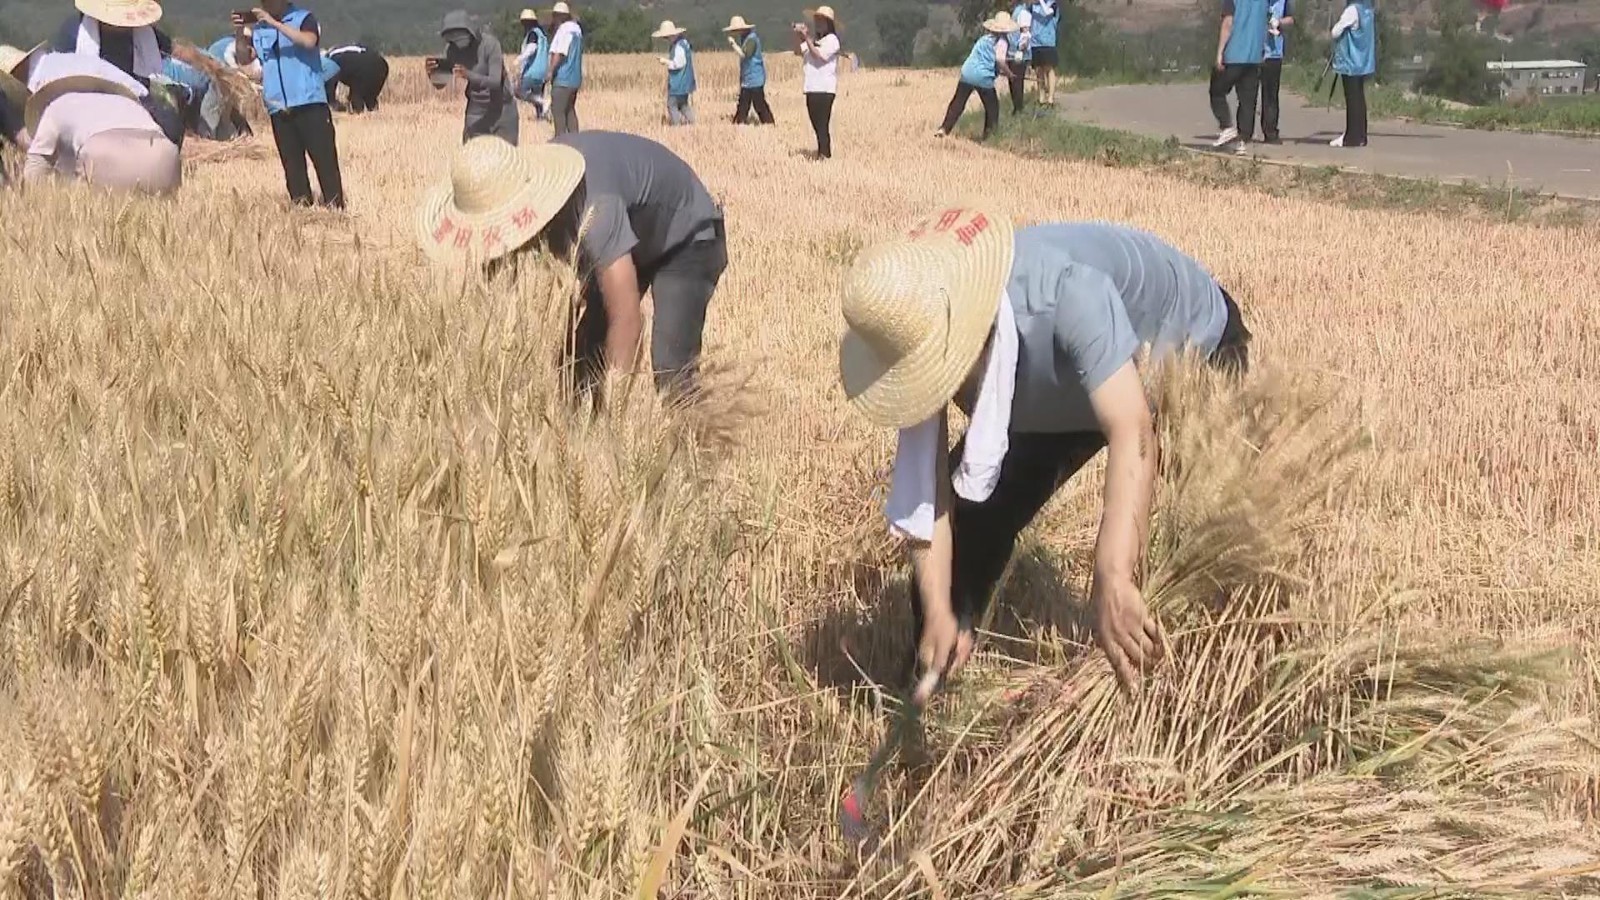 平谷镇罗营镇推出“盛夏之约”千亩梯田农业观光区麦收体验活动